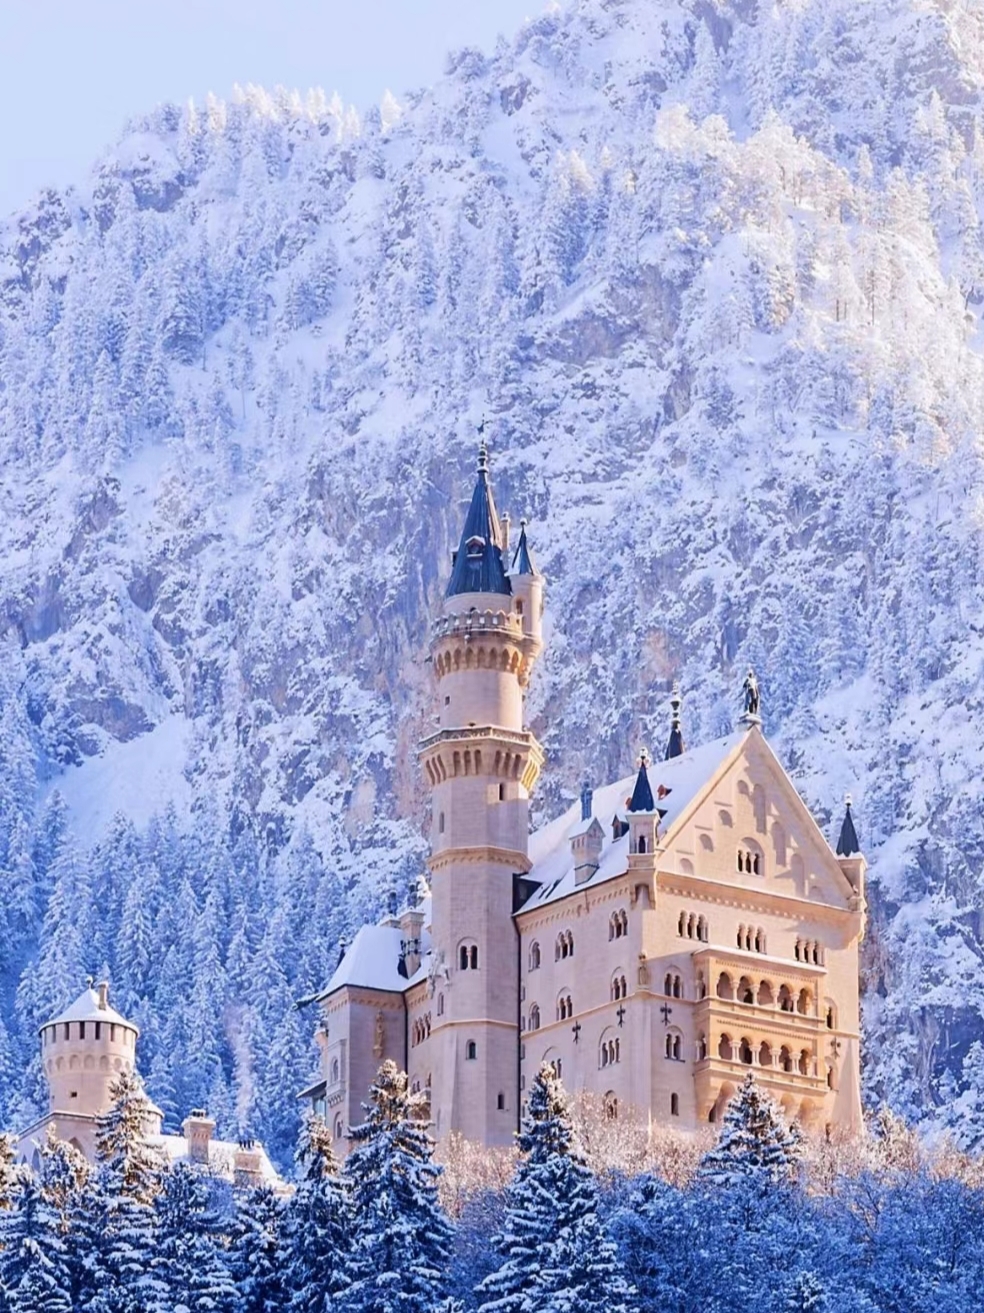 11-12月去了德国，才能看到这样的童话世界 冬季的#德国是懂你的温泉、国王湖、新天鹅 堡…1个W就